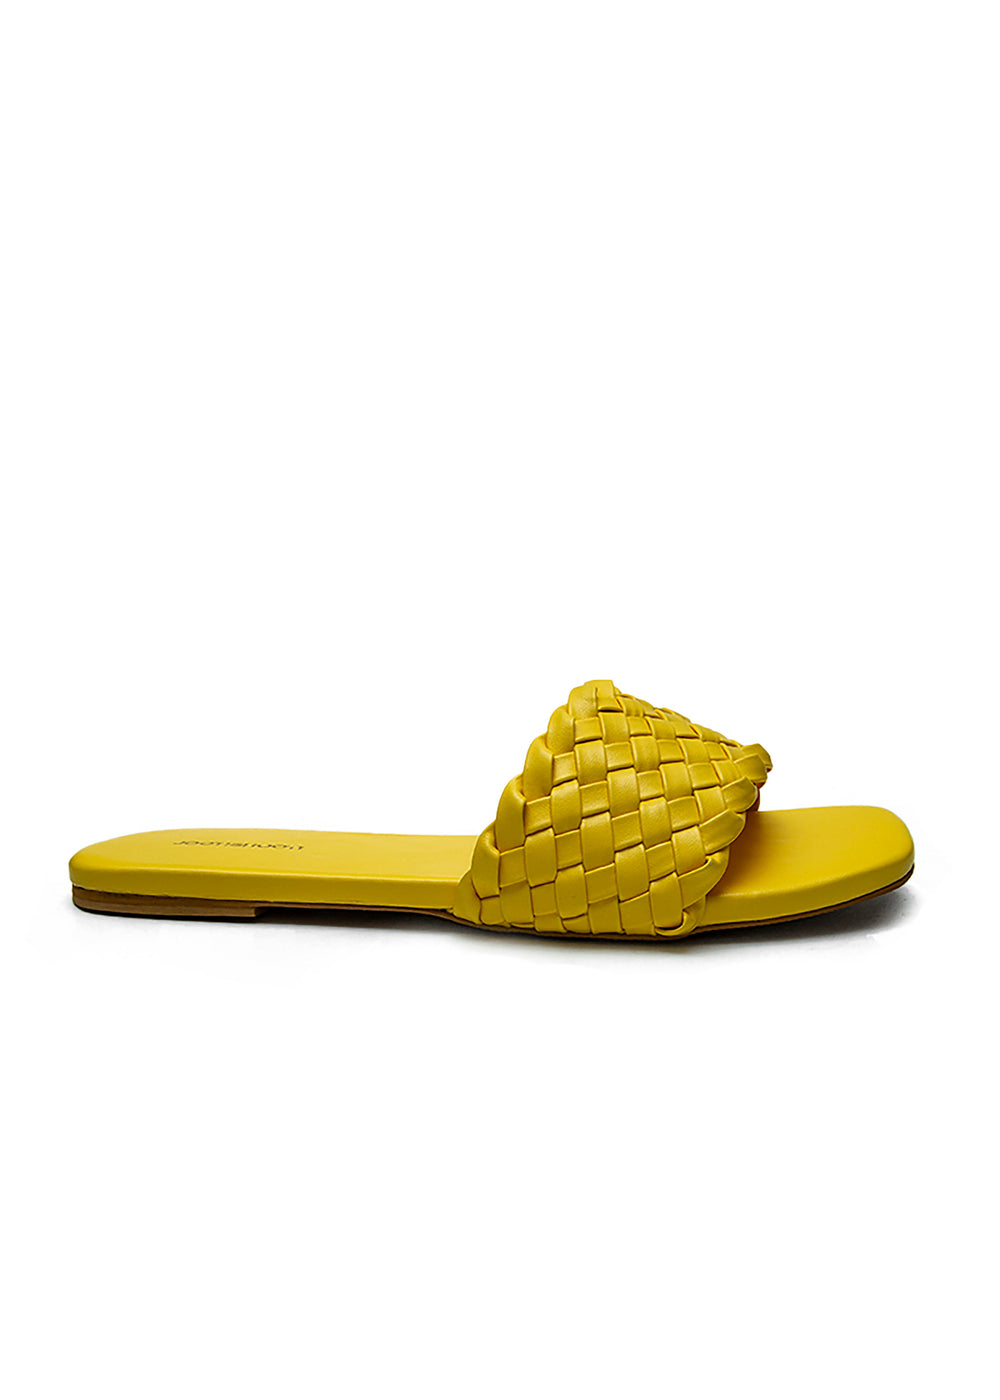 Weave Slides Yellow - Jooti Shooti